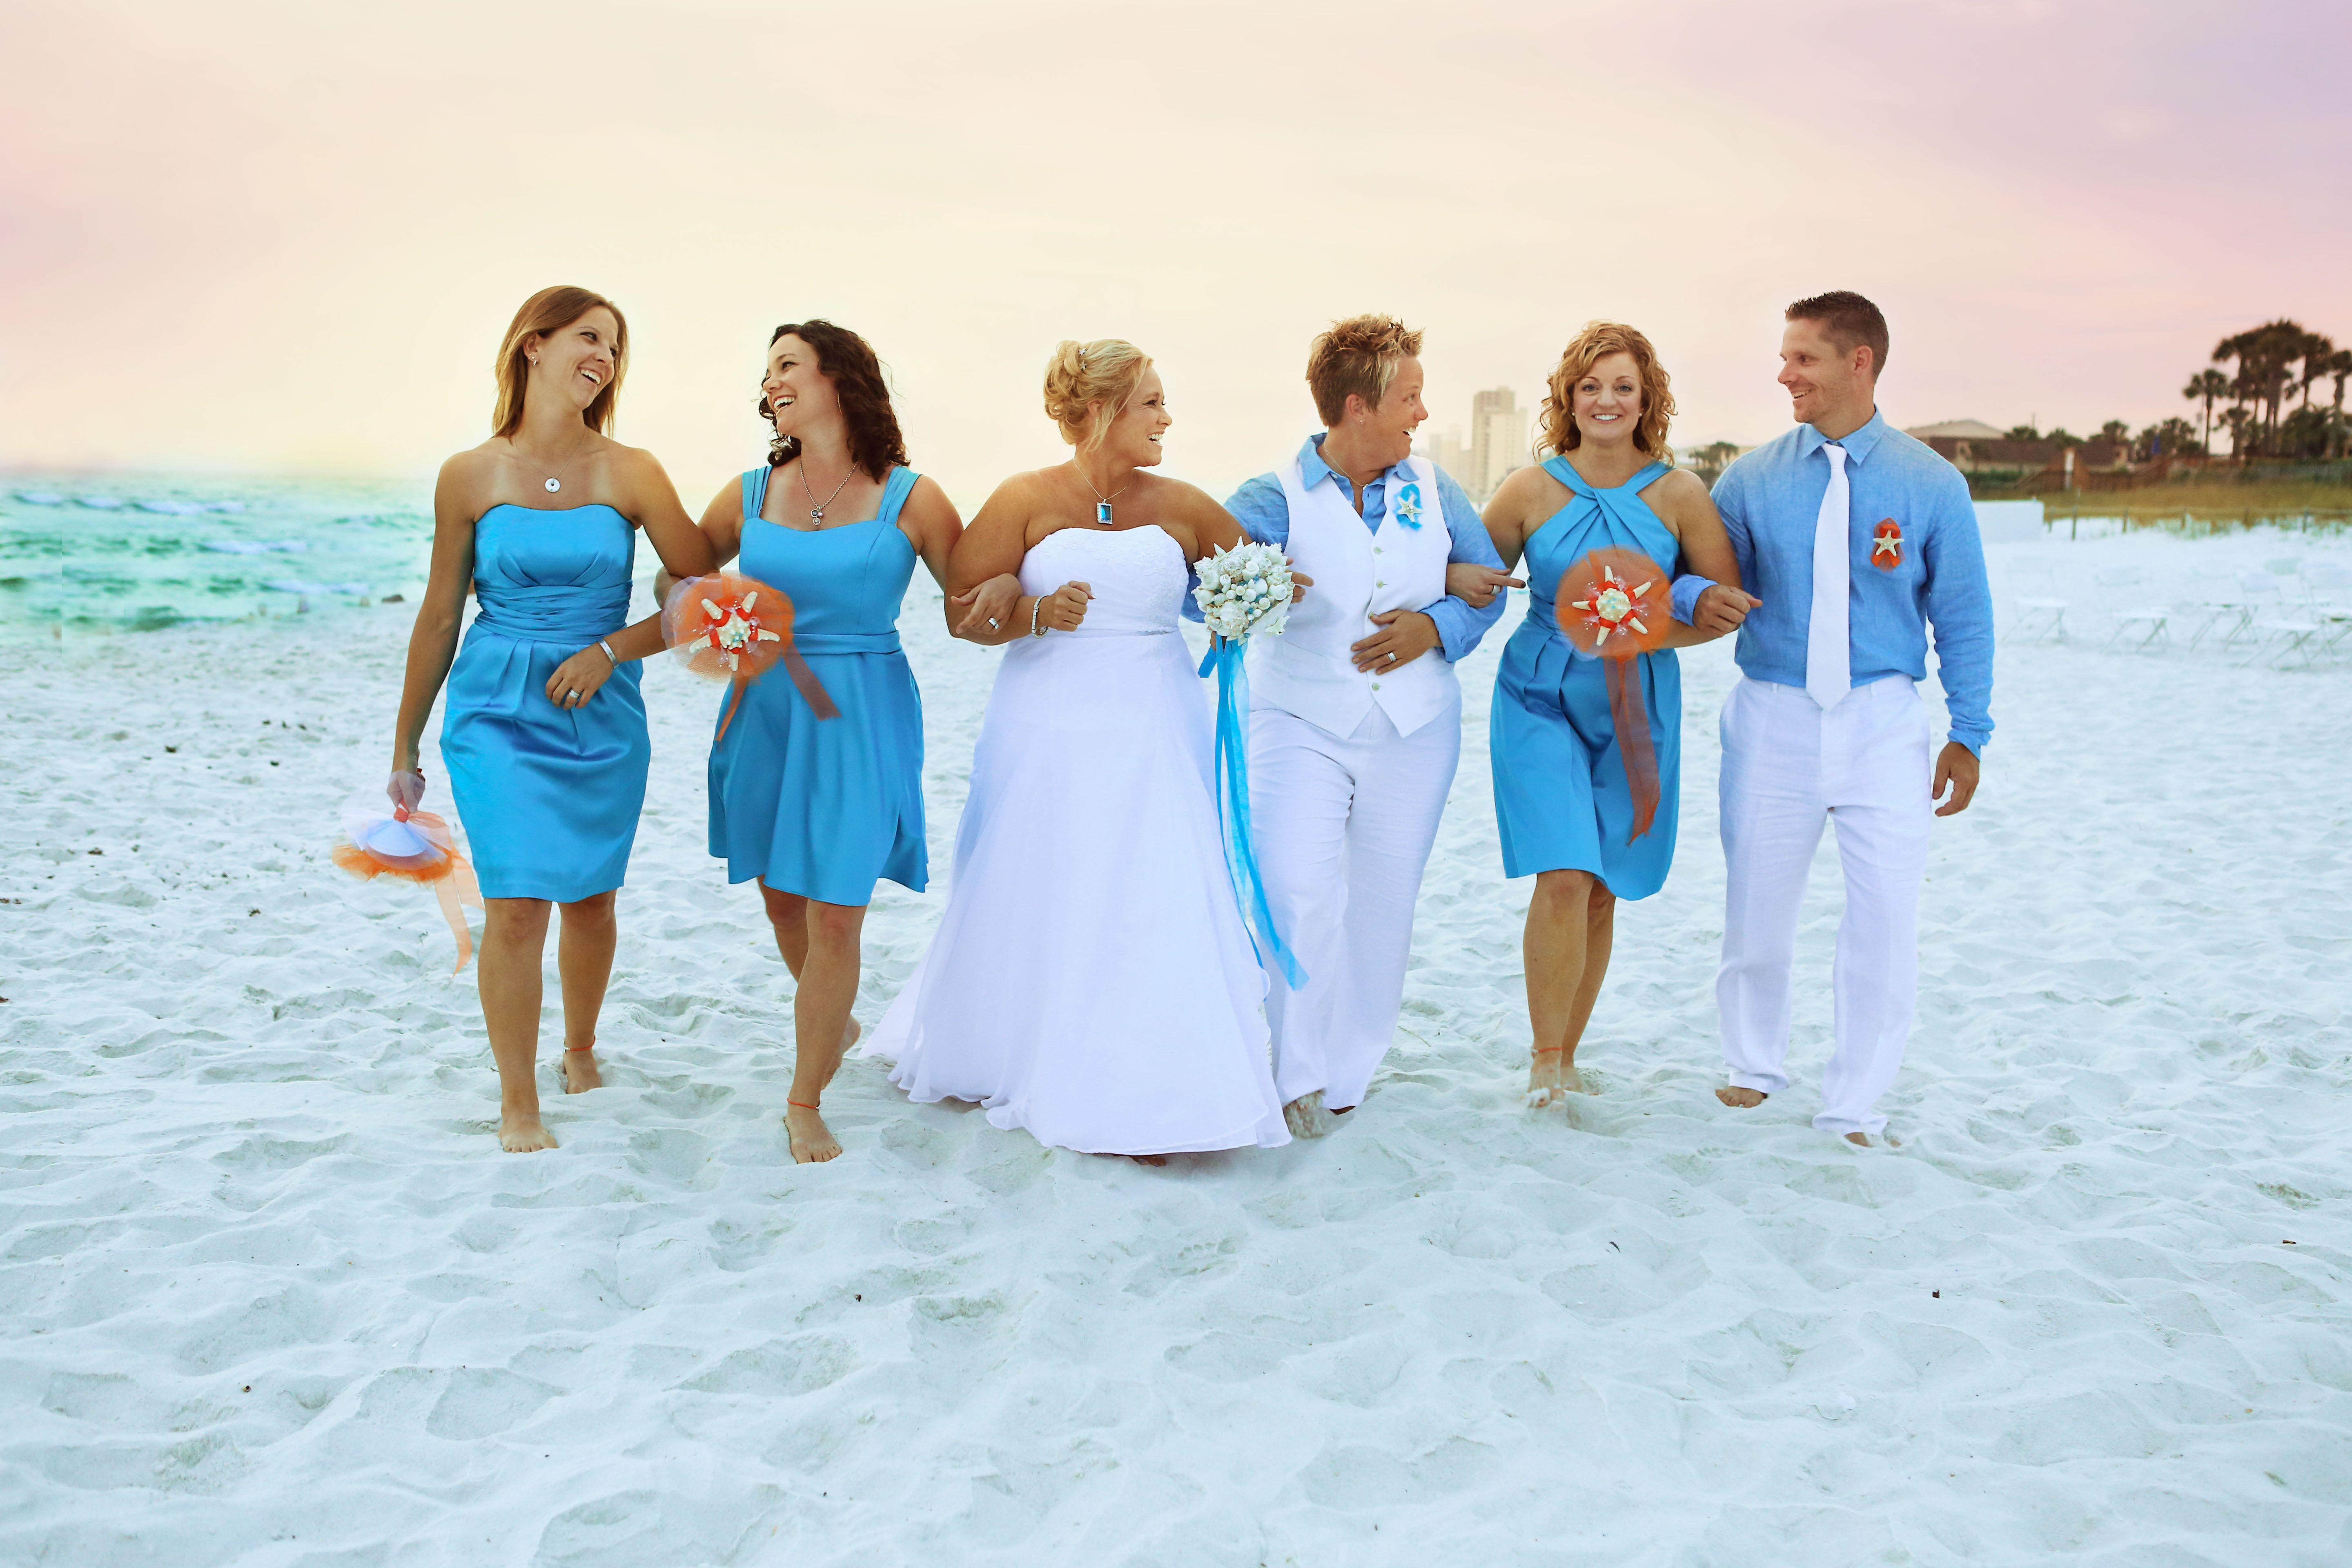 Malibu Blue Wedding Party Attire5760 x 3840